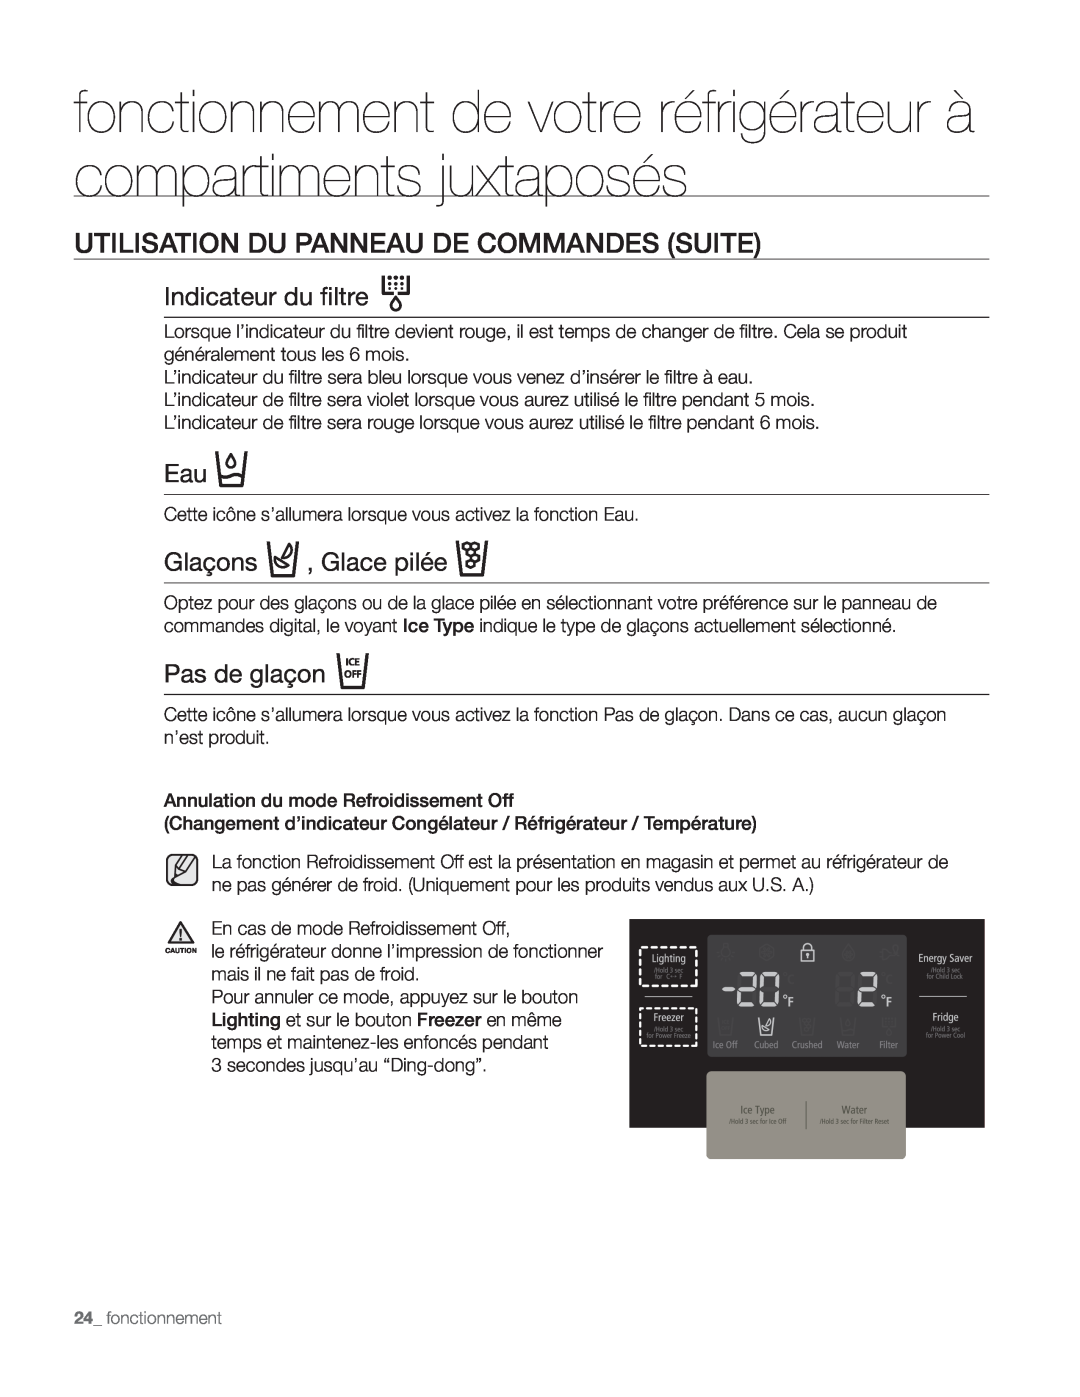 Samsung DA68-01890Q Utilisation Du Panneau De Commandes Suite, Indicateur du filtre, Glaçons , Glace pilée, Pas de glaçon 